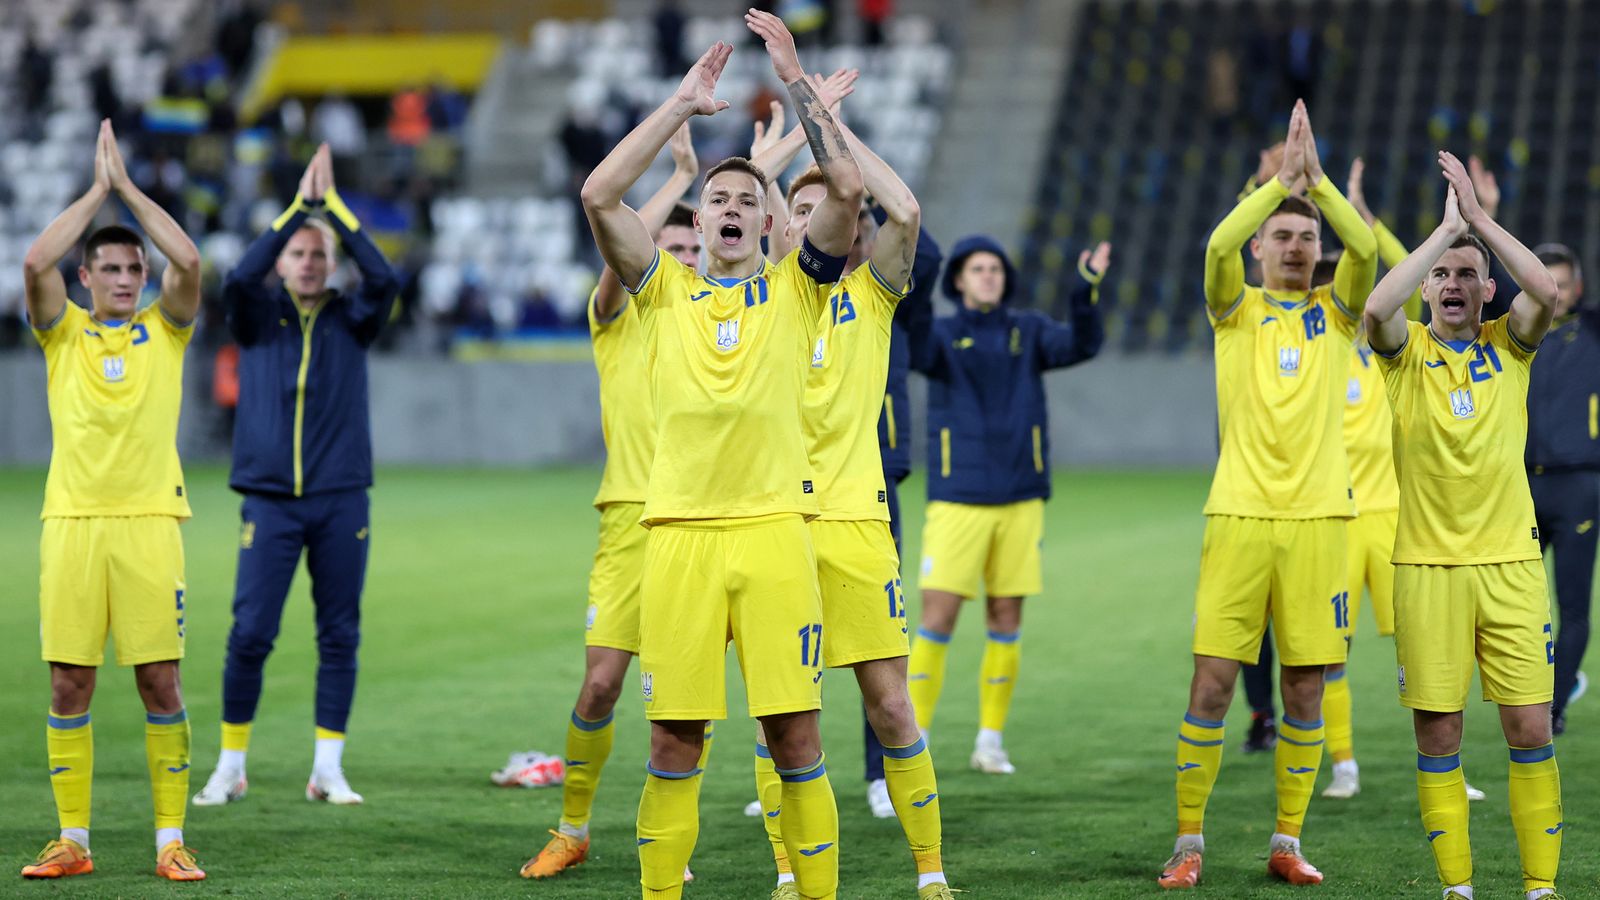 Ukrajina U21 3-2 Anglicko U21: Noni Madueke a Charlie Cresswell skórovali v kvalifikácii o Euro 2025 |  futbalové správy